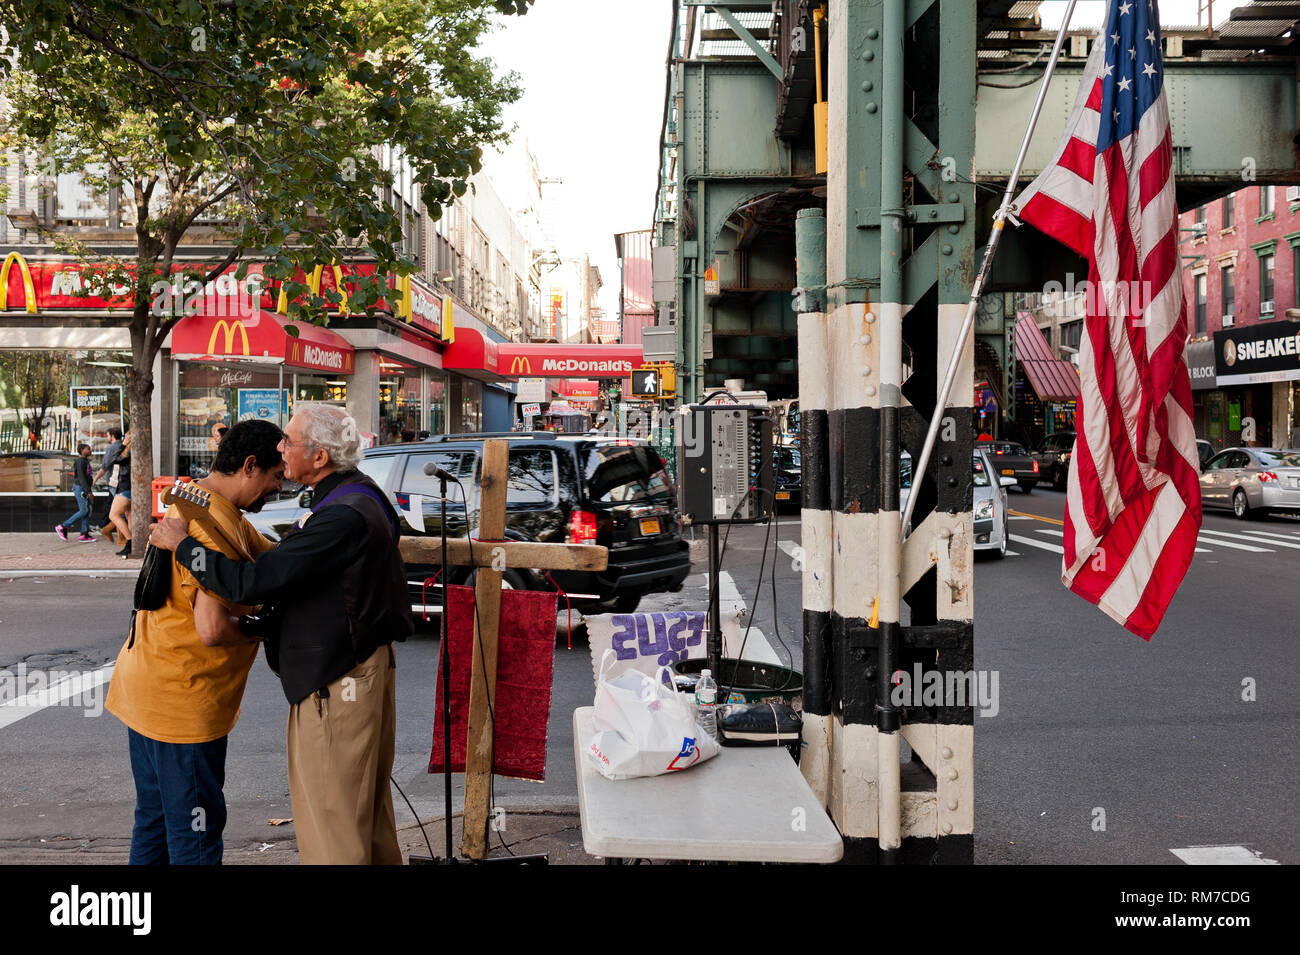 Artiste de rue ami accueille sur coin de rue à Brooklyn New York, avec le drapeau américain accroché sur perche Banque D'Images